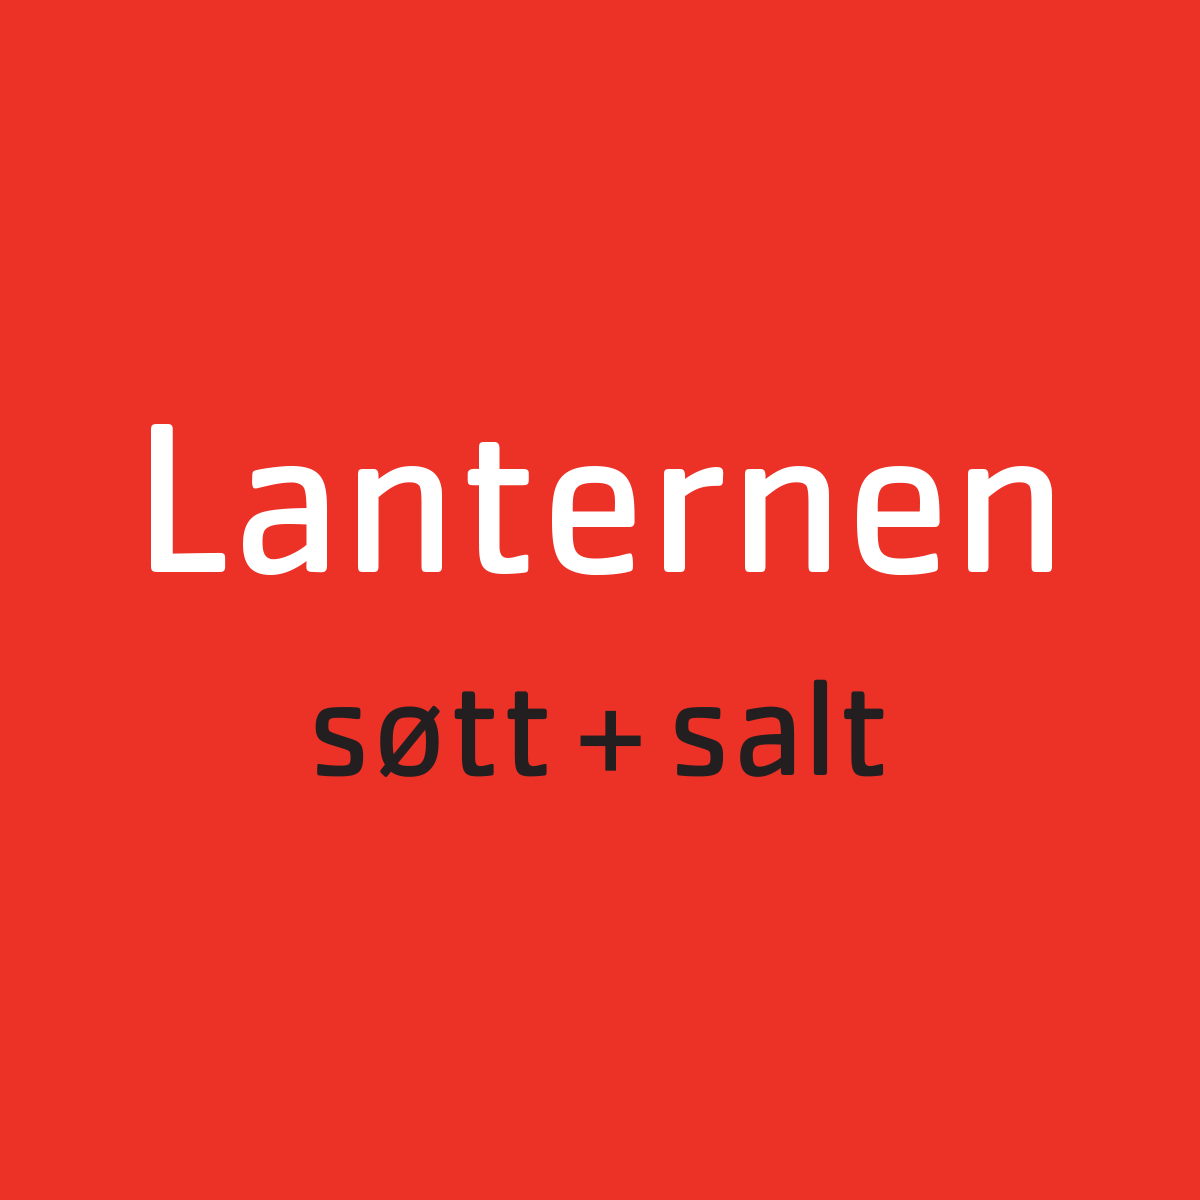 Søtt+Salt - Lanternen Restaurant